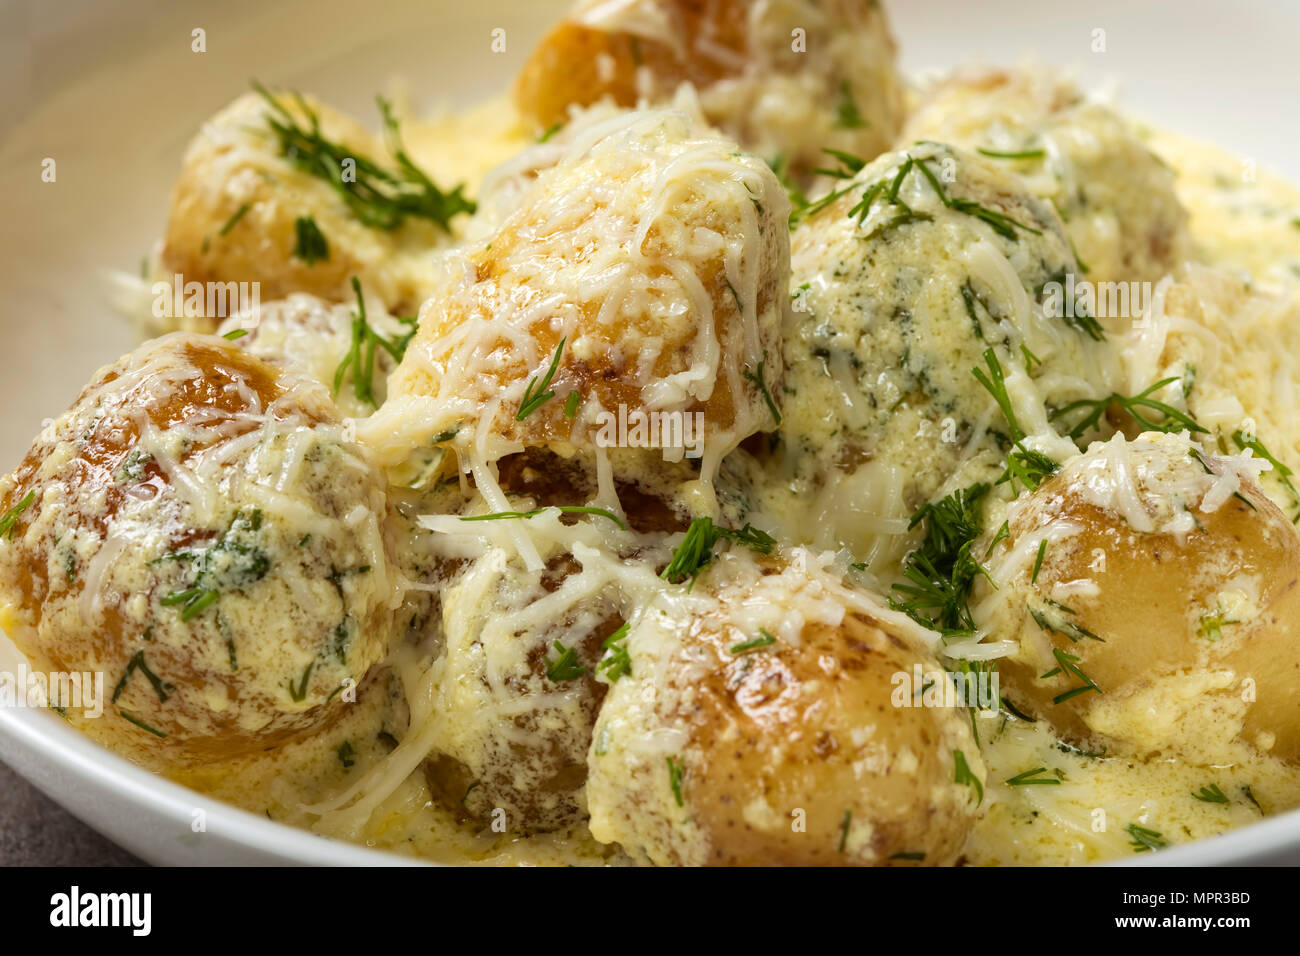 Baby neue Kartoffeln mit saurer Sahne und Käse Sauce in der Platte - Nahaufnahme Stockfoto